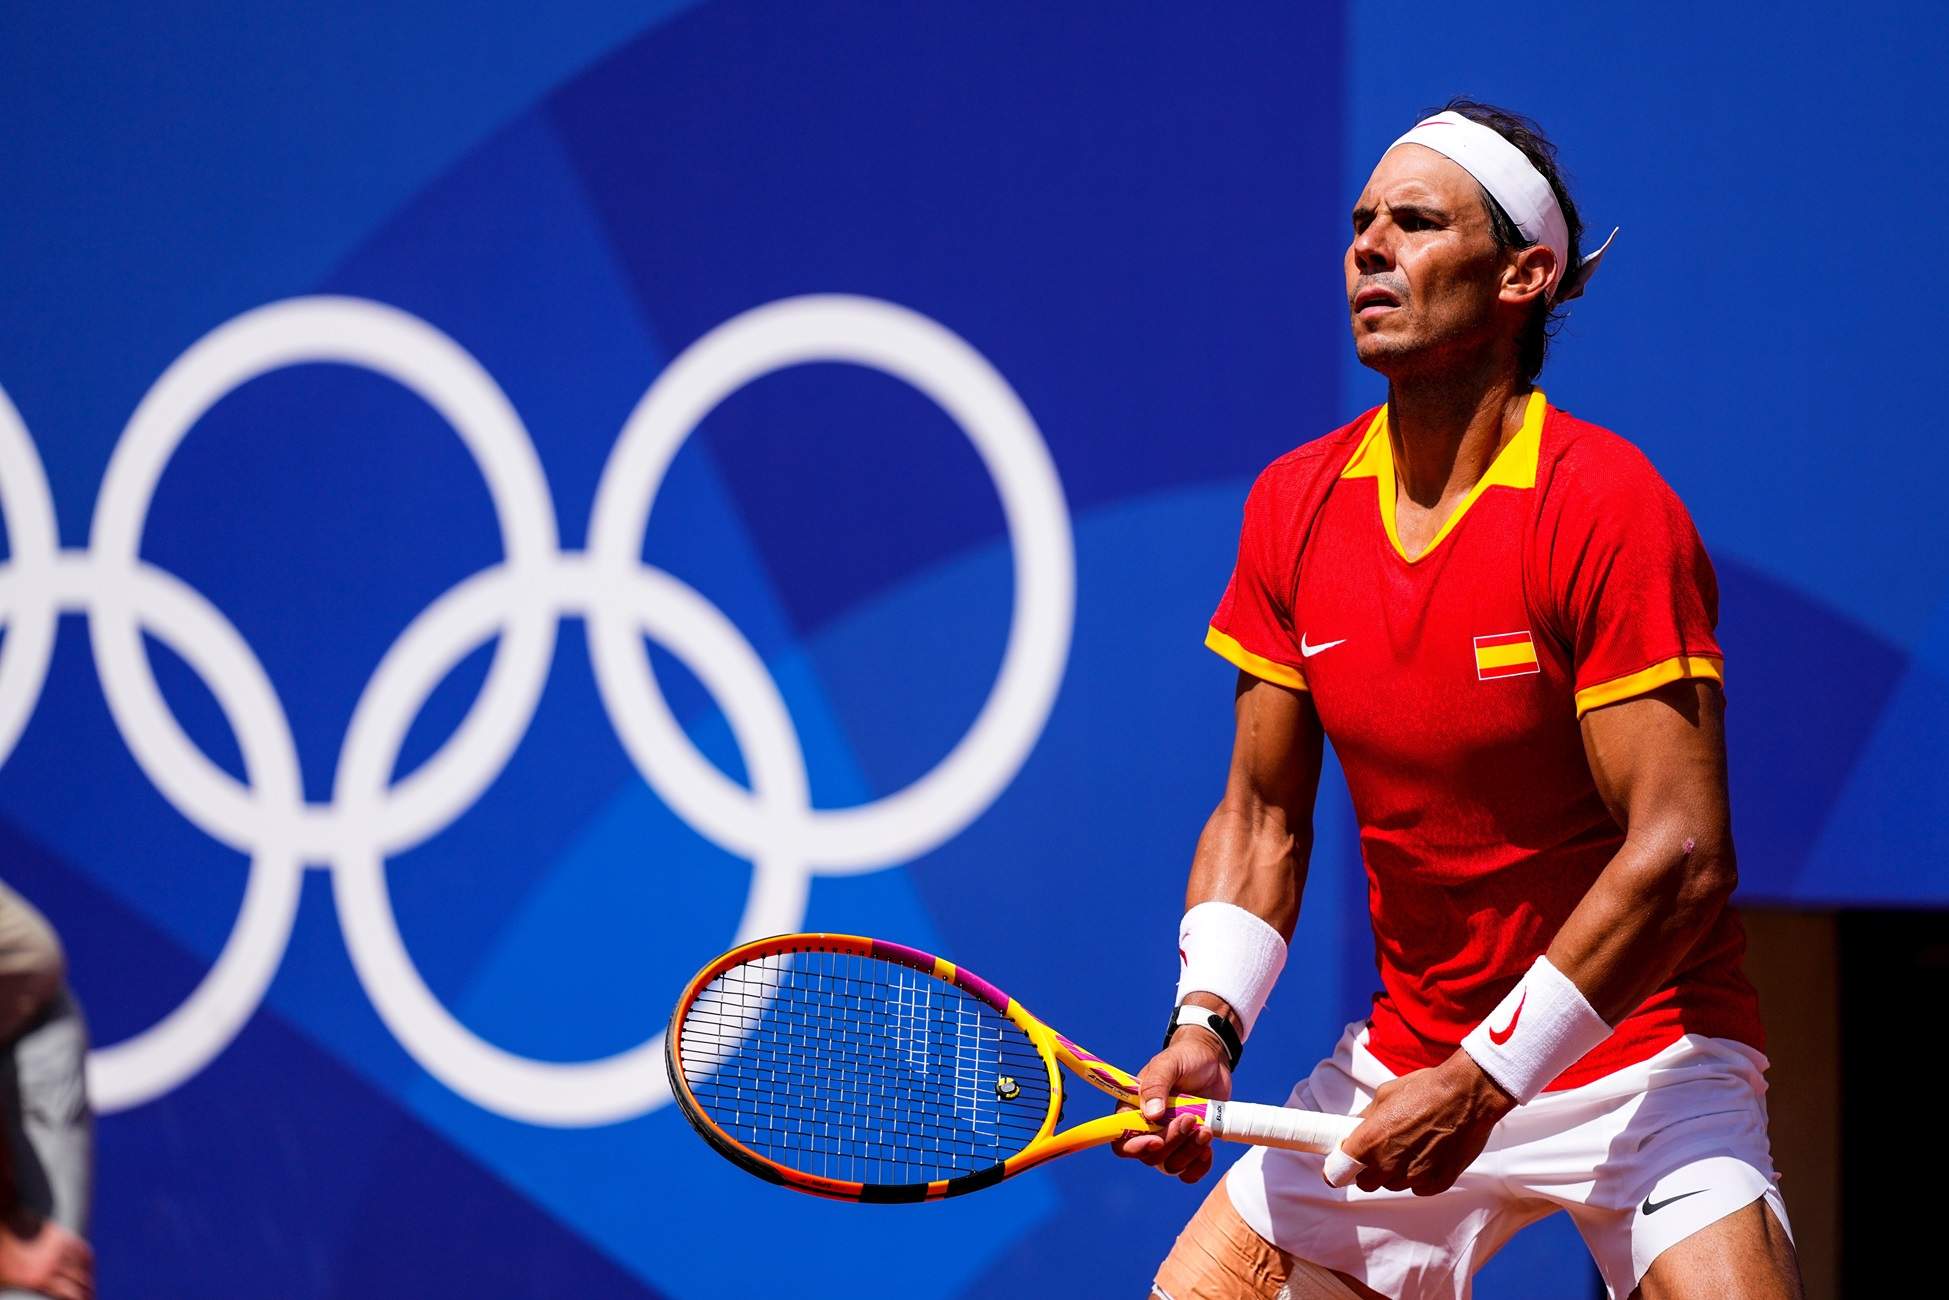 La derrota de Rafa Nadal contra Djokovic marca la tercera jornada dels Jocs Olímpics de París 2024